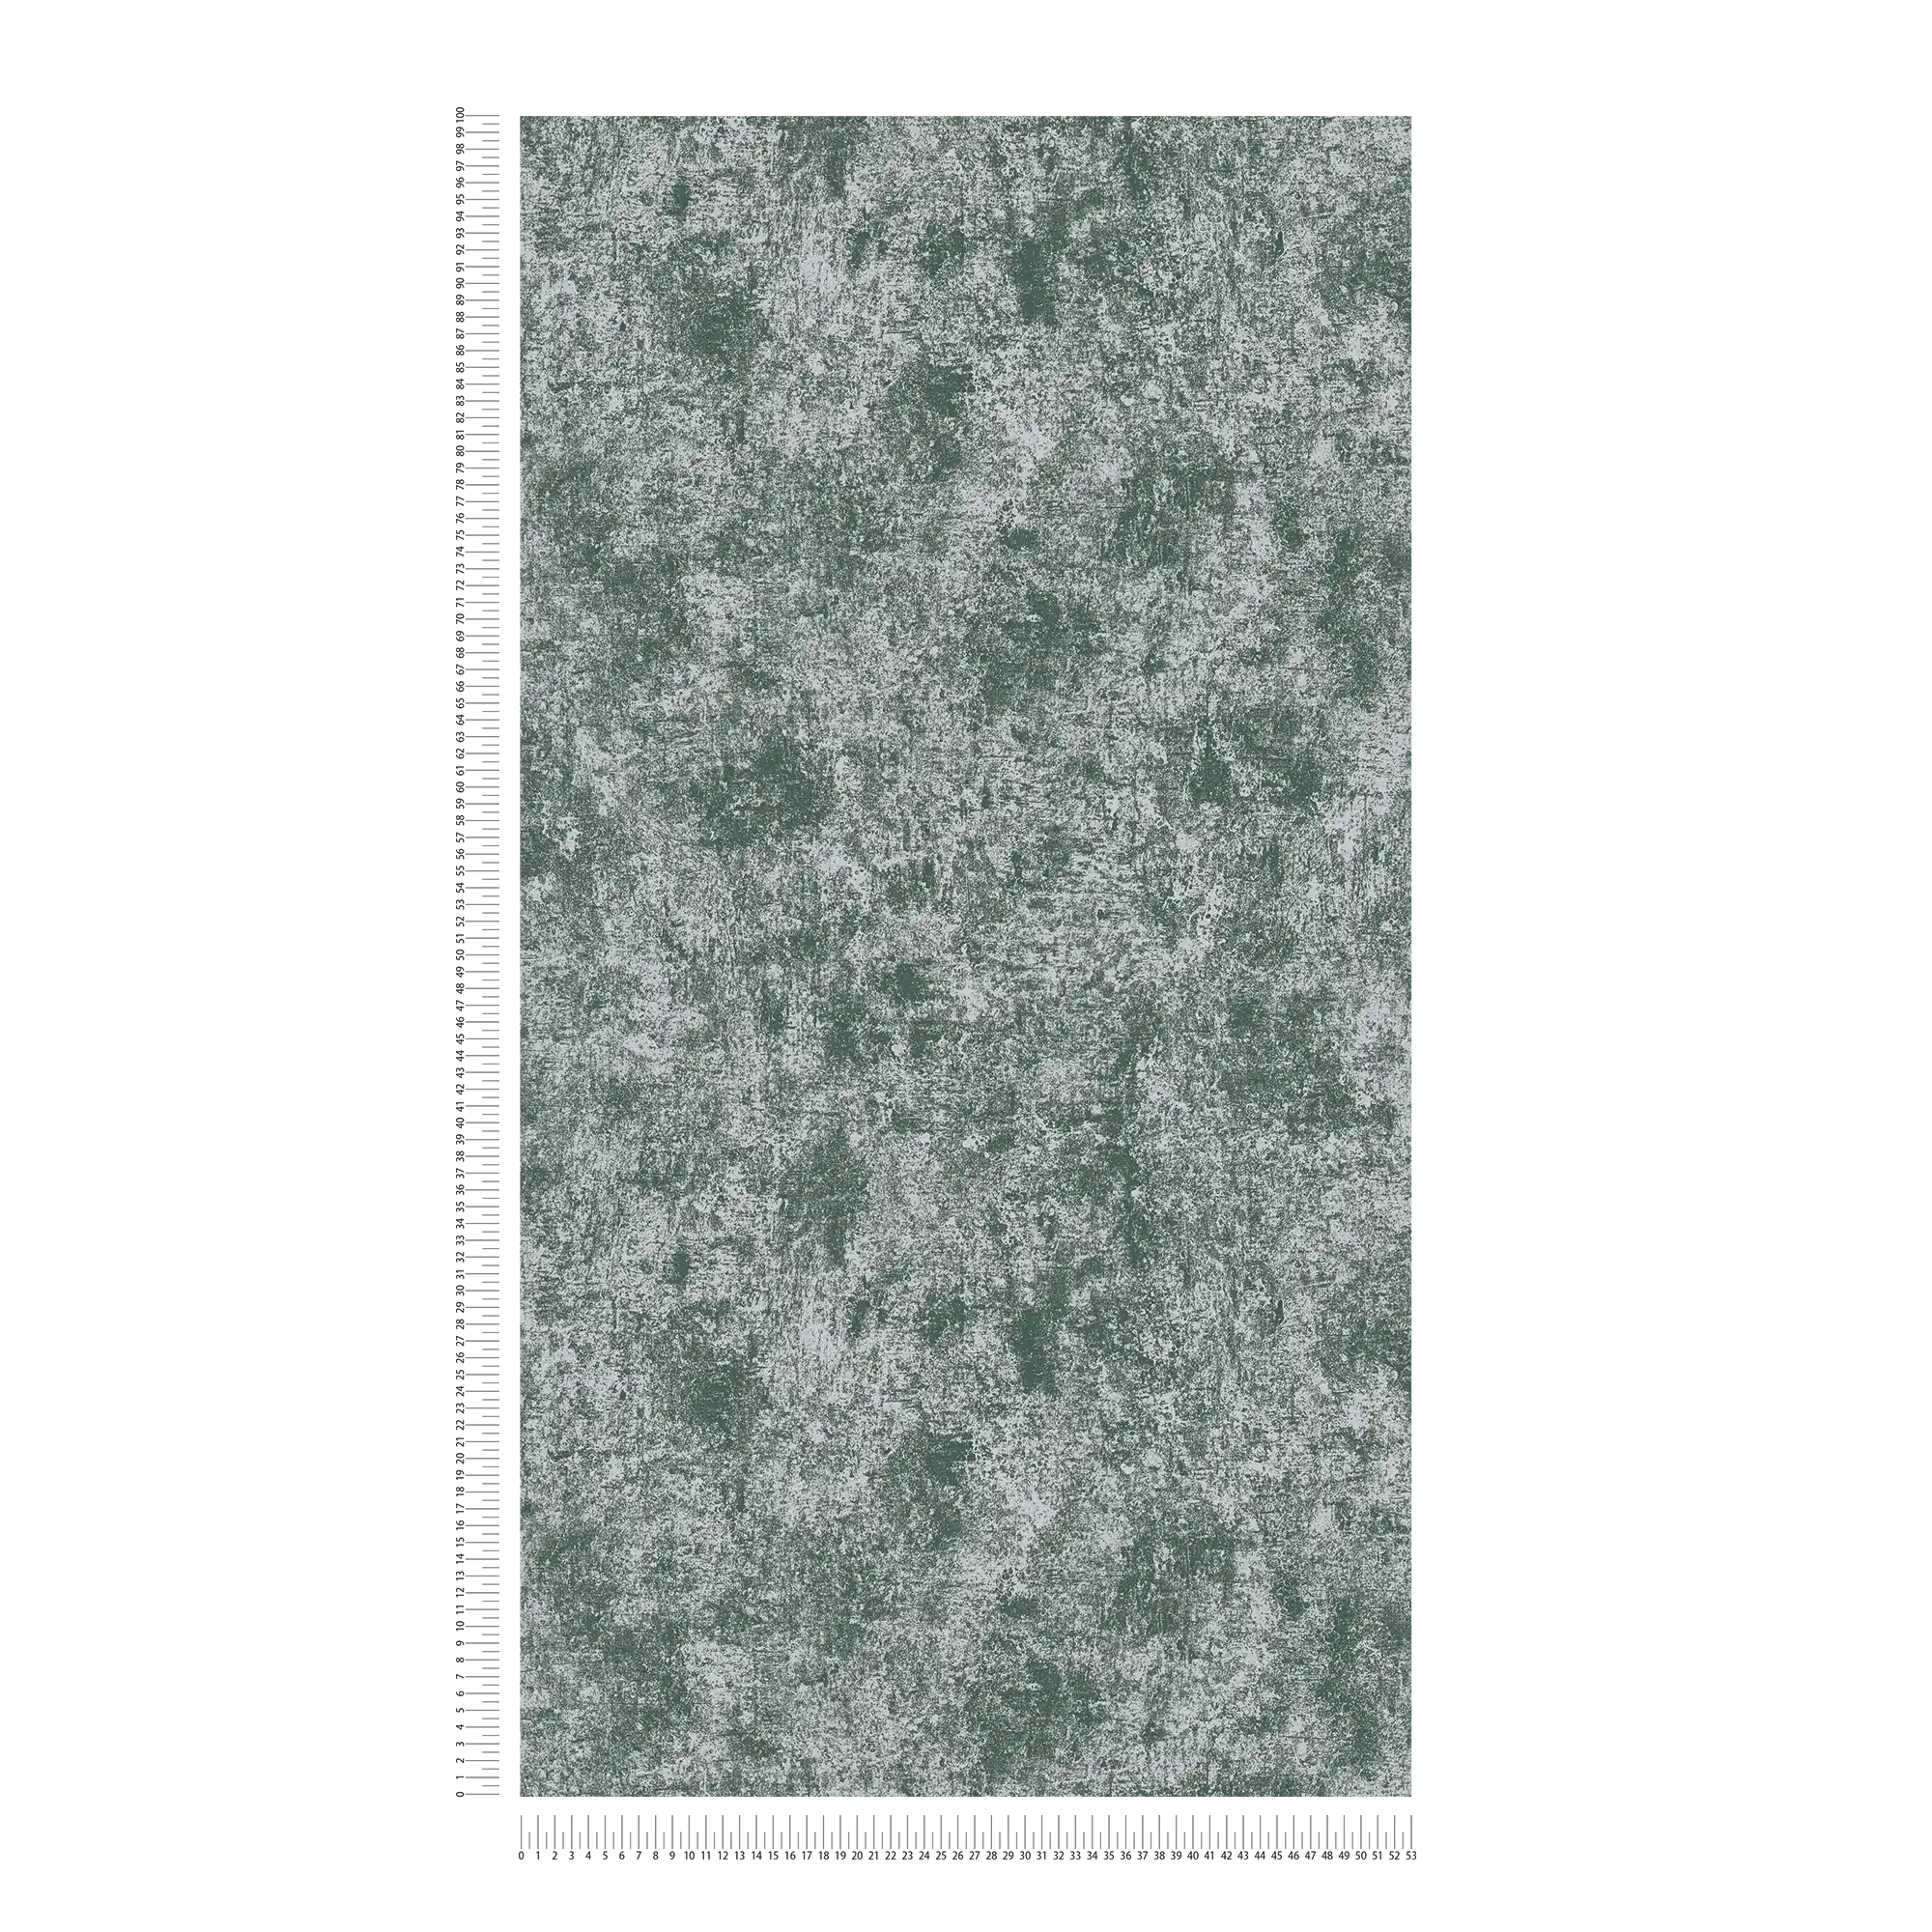             Metaaleffectbehang met glanzend effect glad - groen, zilver
        